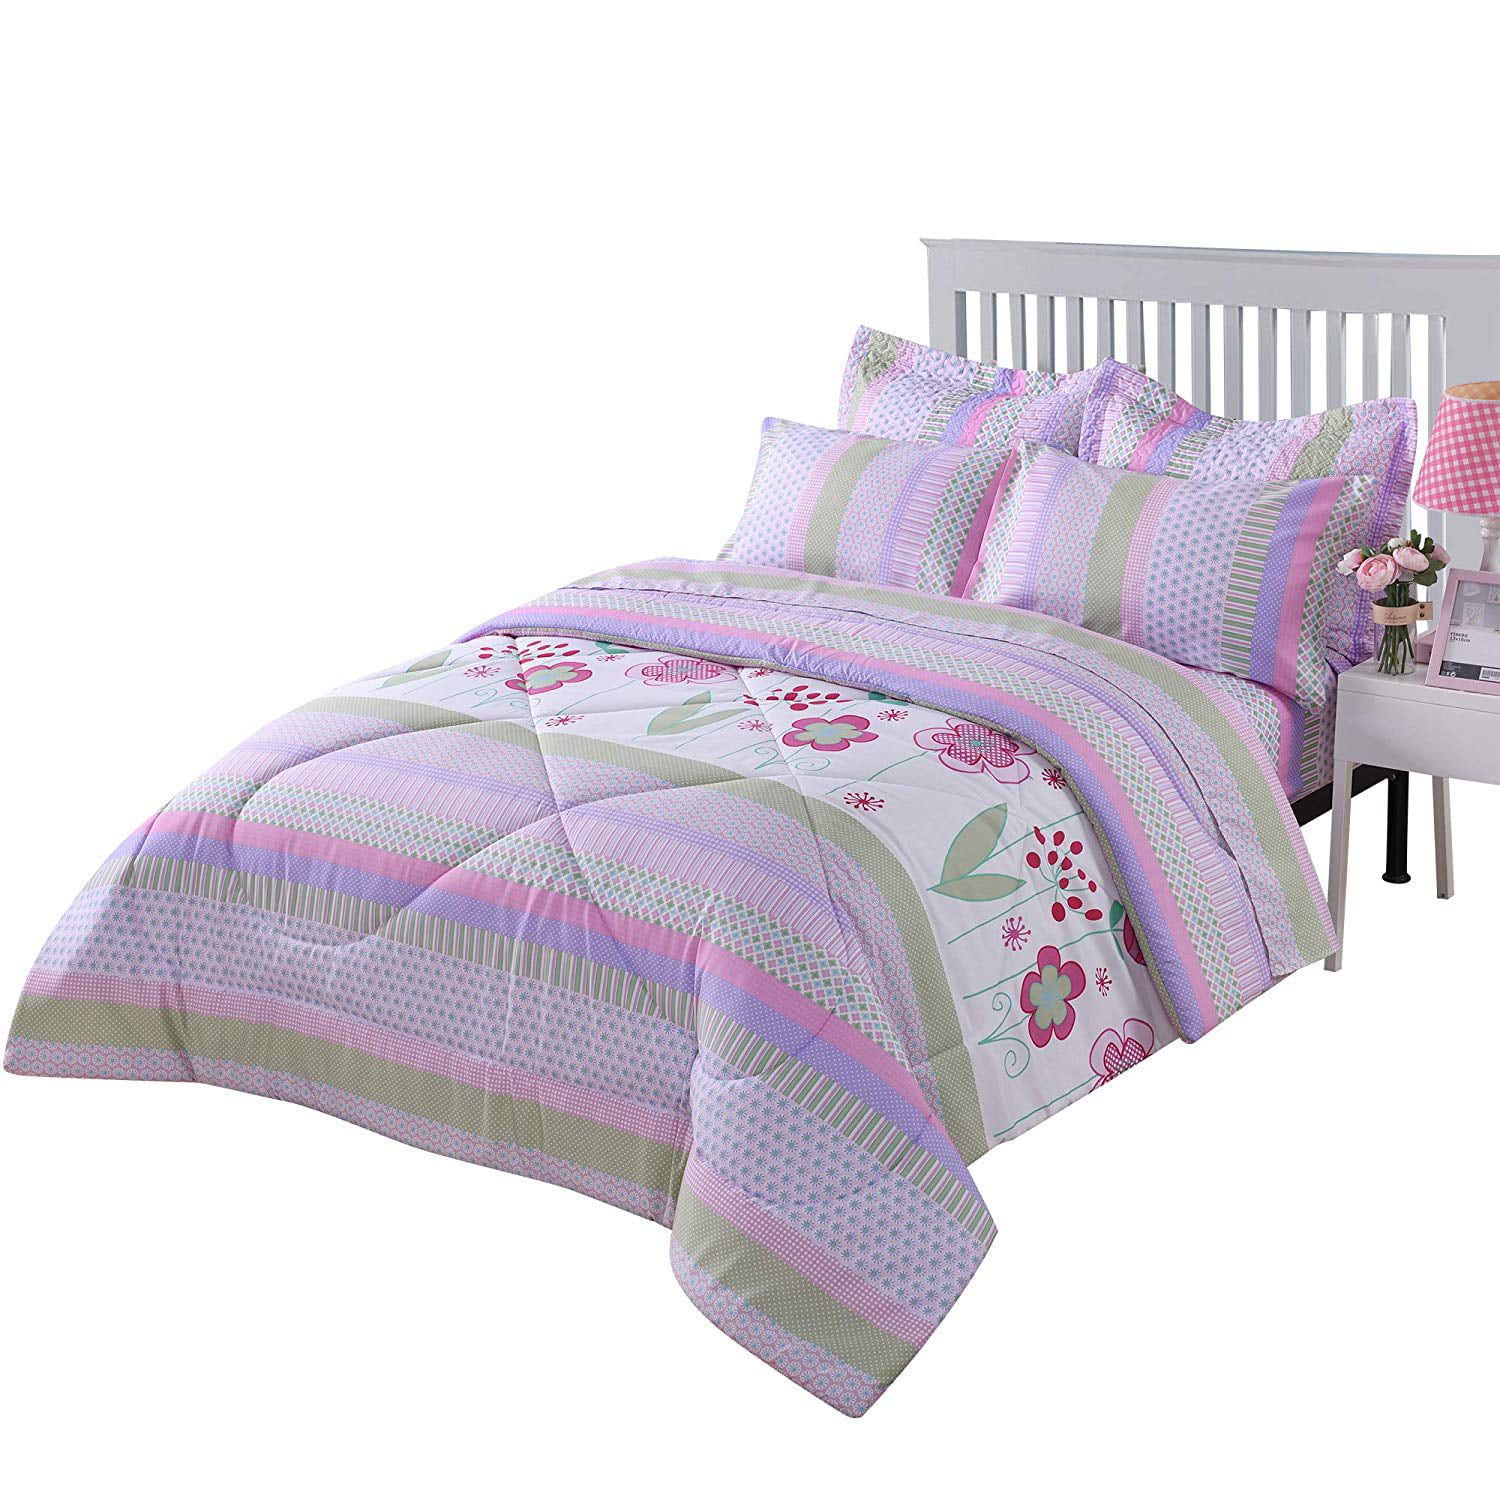 Marcielo Kids Comforter Set Girls, Bunk Bed Duvet Sets